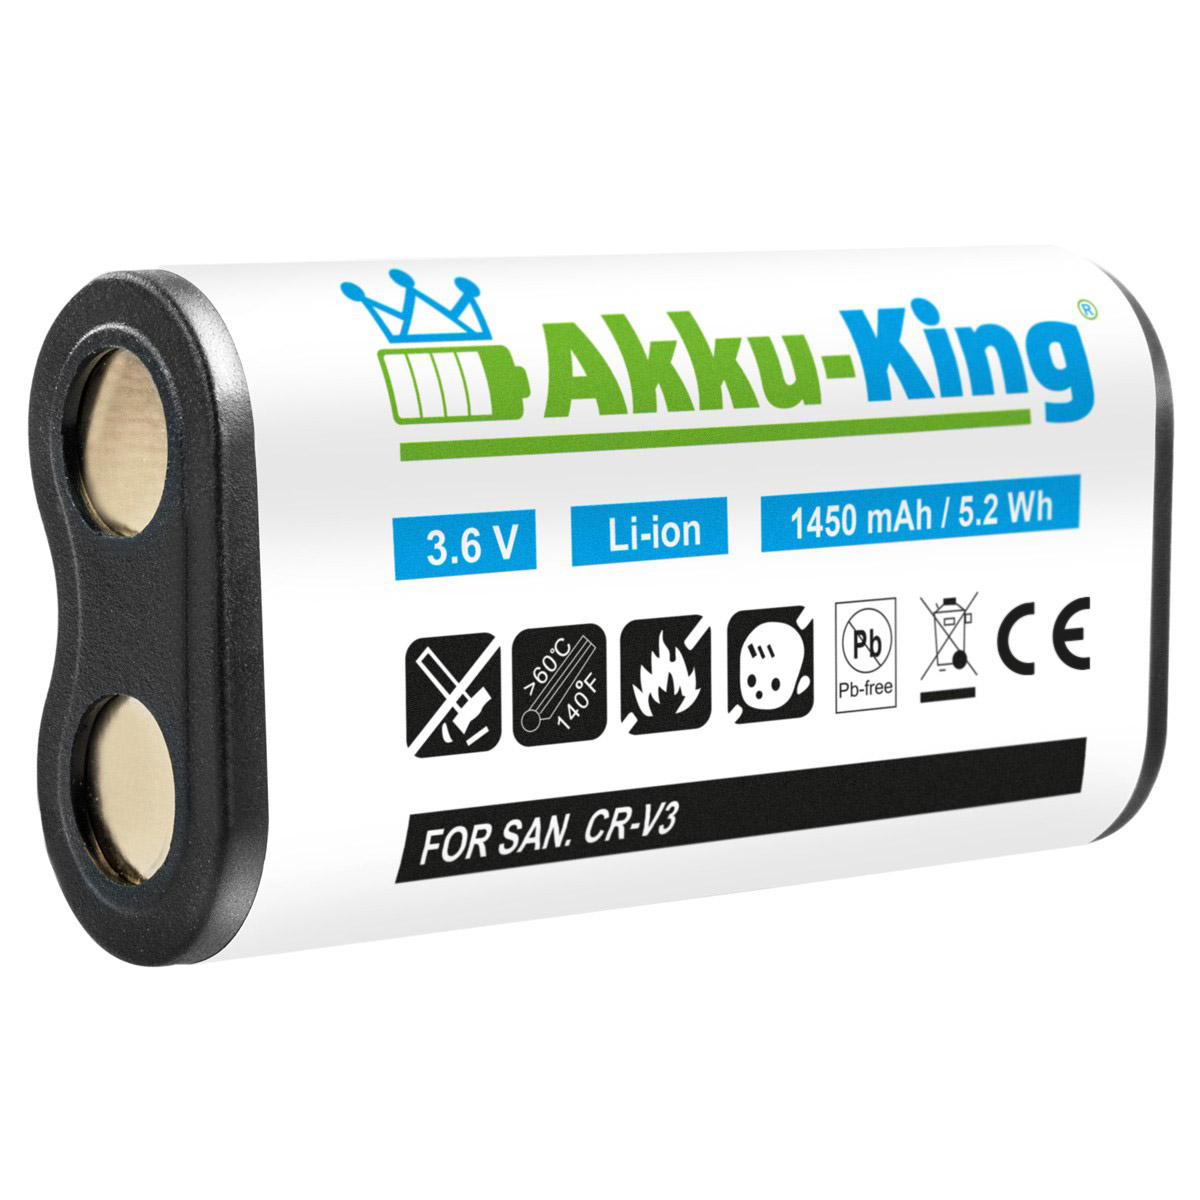 3.6 CR-V3 Nikon AKKU-KING Kamera-Akku, kompatibel Volt, mit Akku Li-Ion 1450mAh